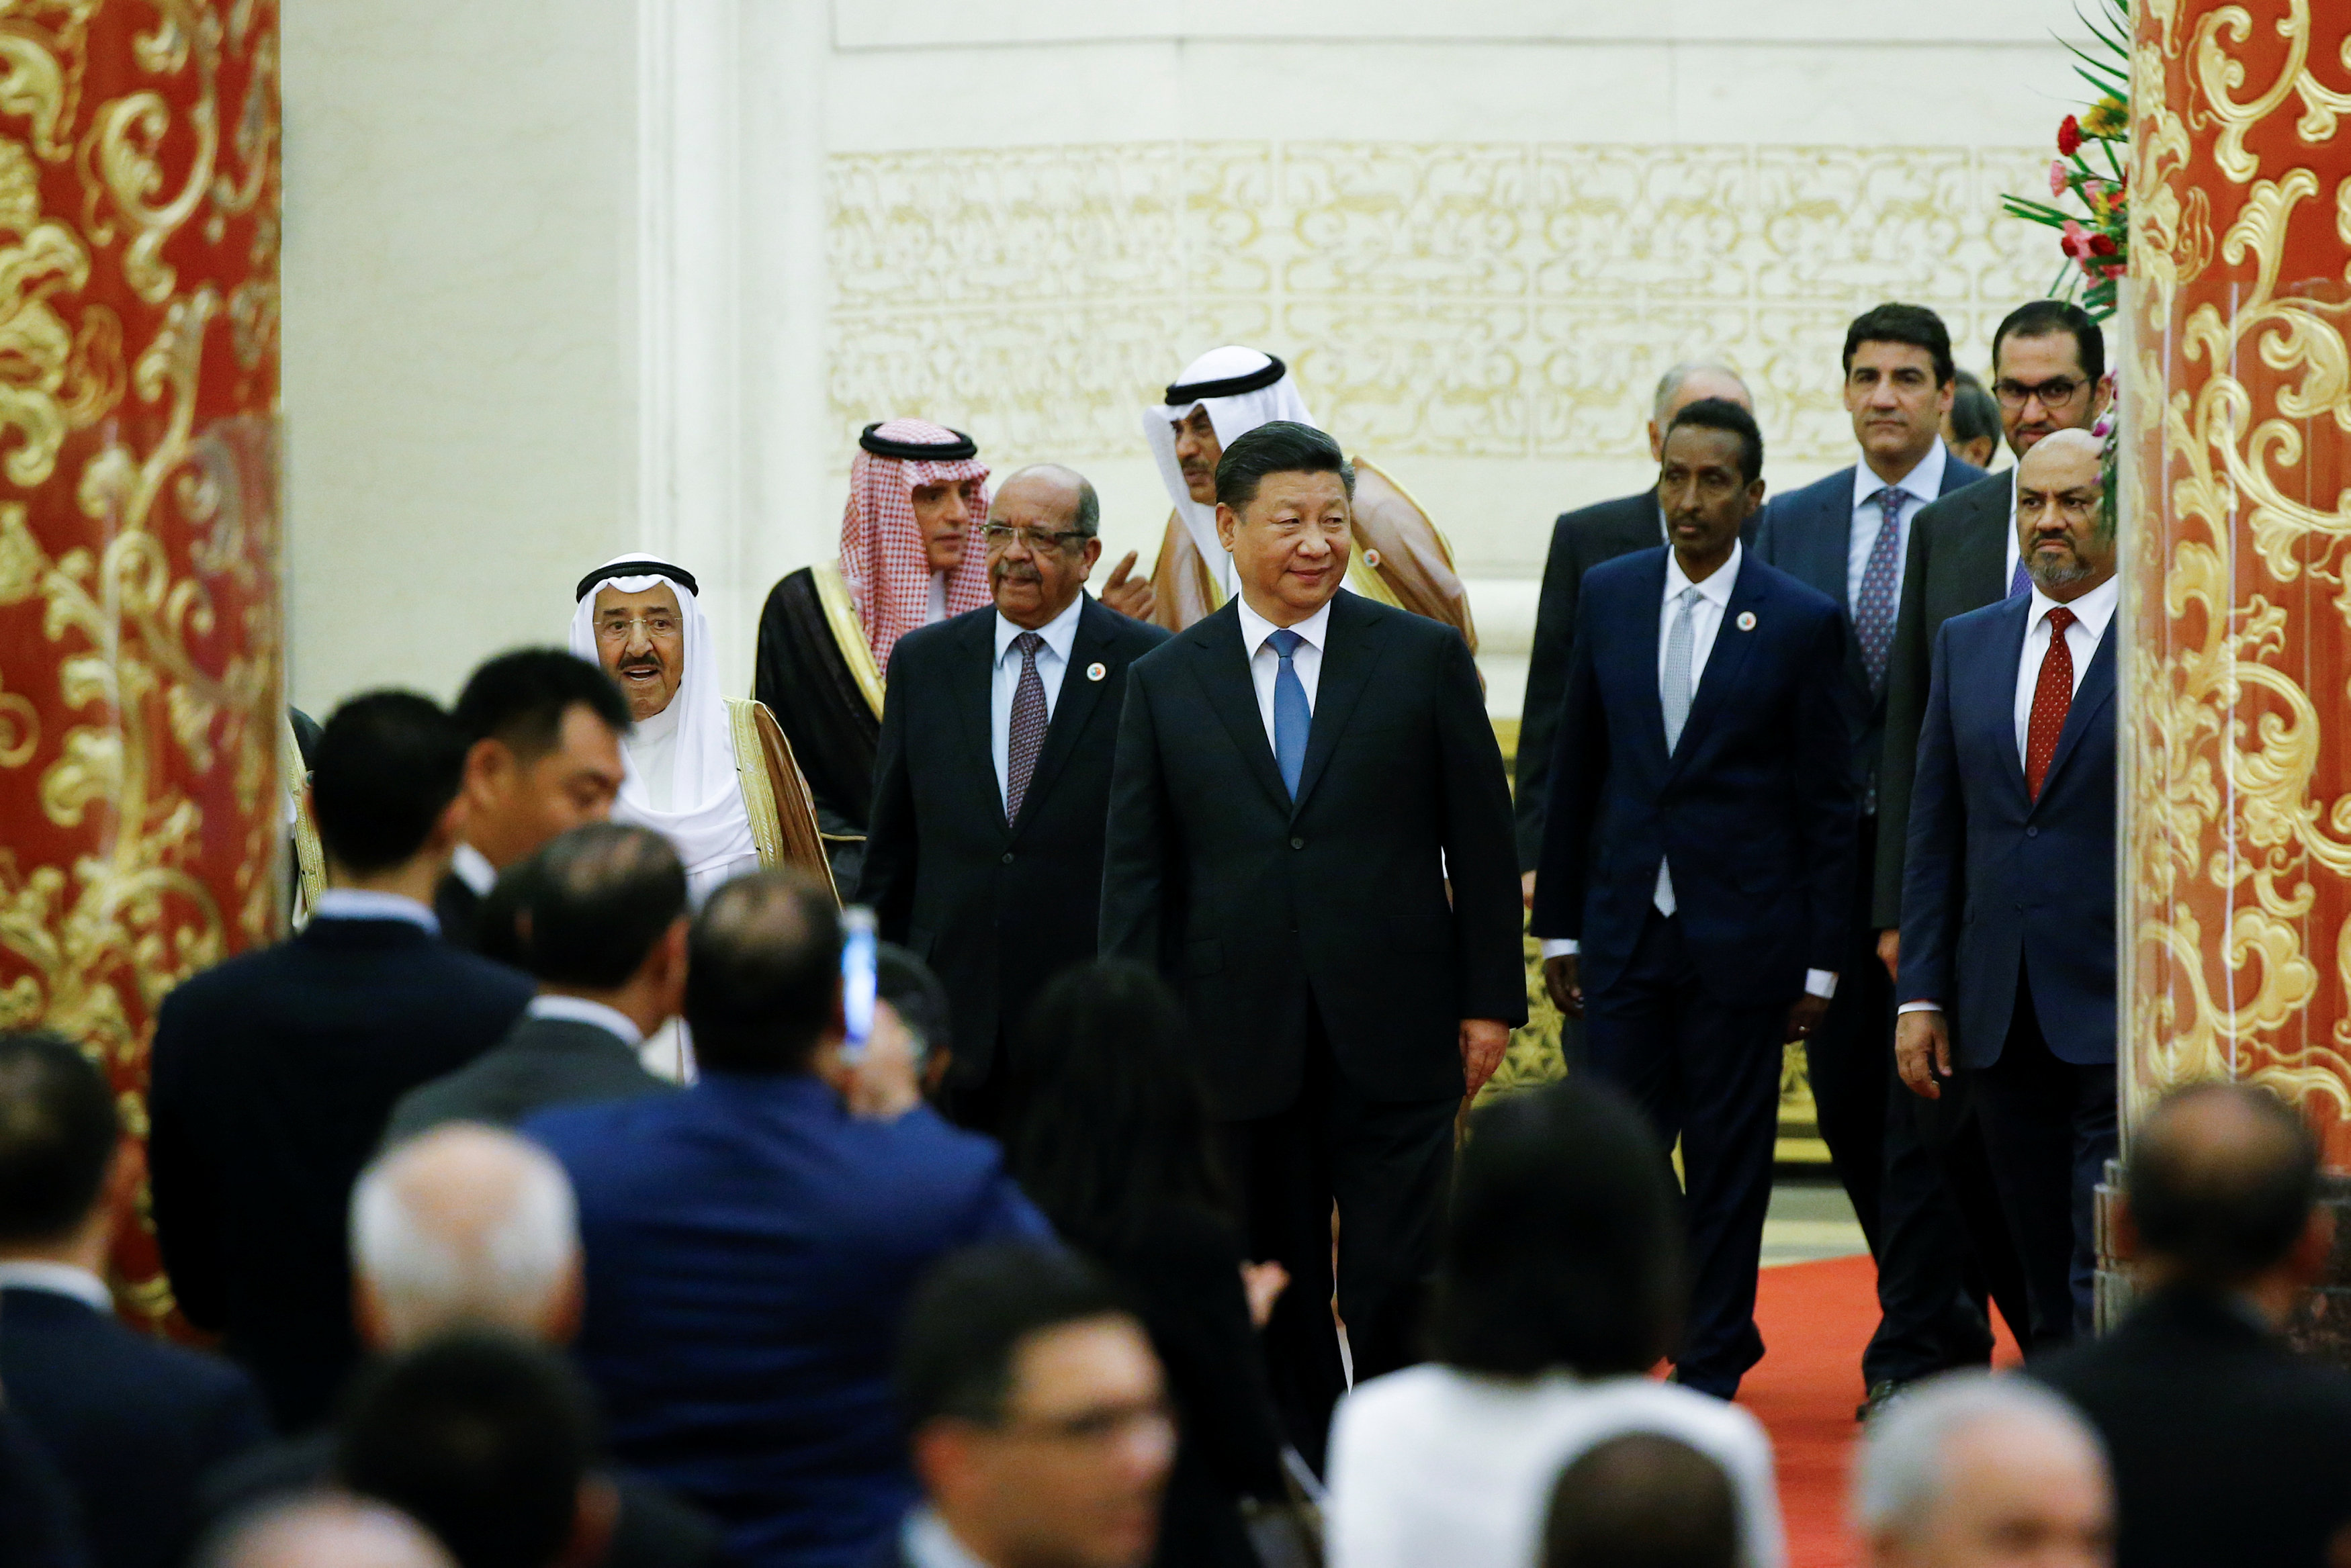  وصول الرئيس الصينى وأمير الكويت ووزير خارجية السعودية 